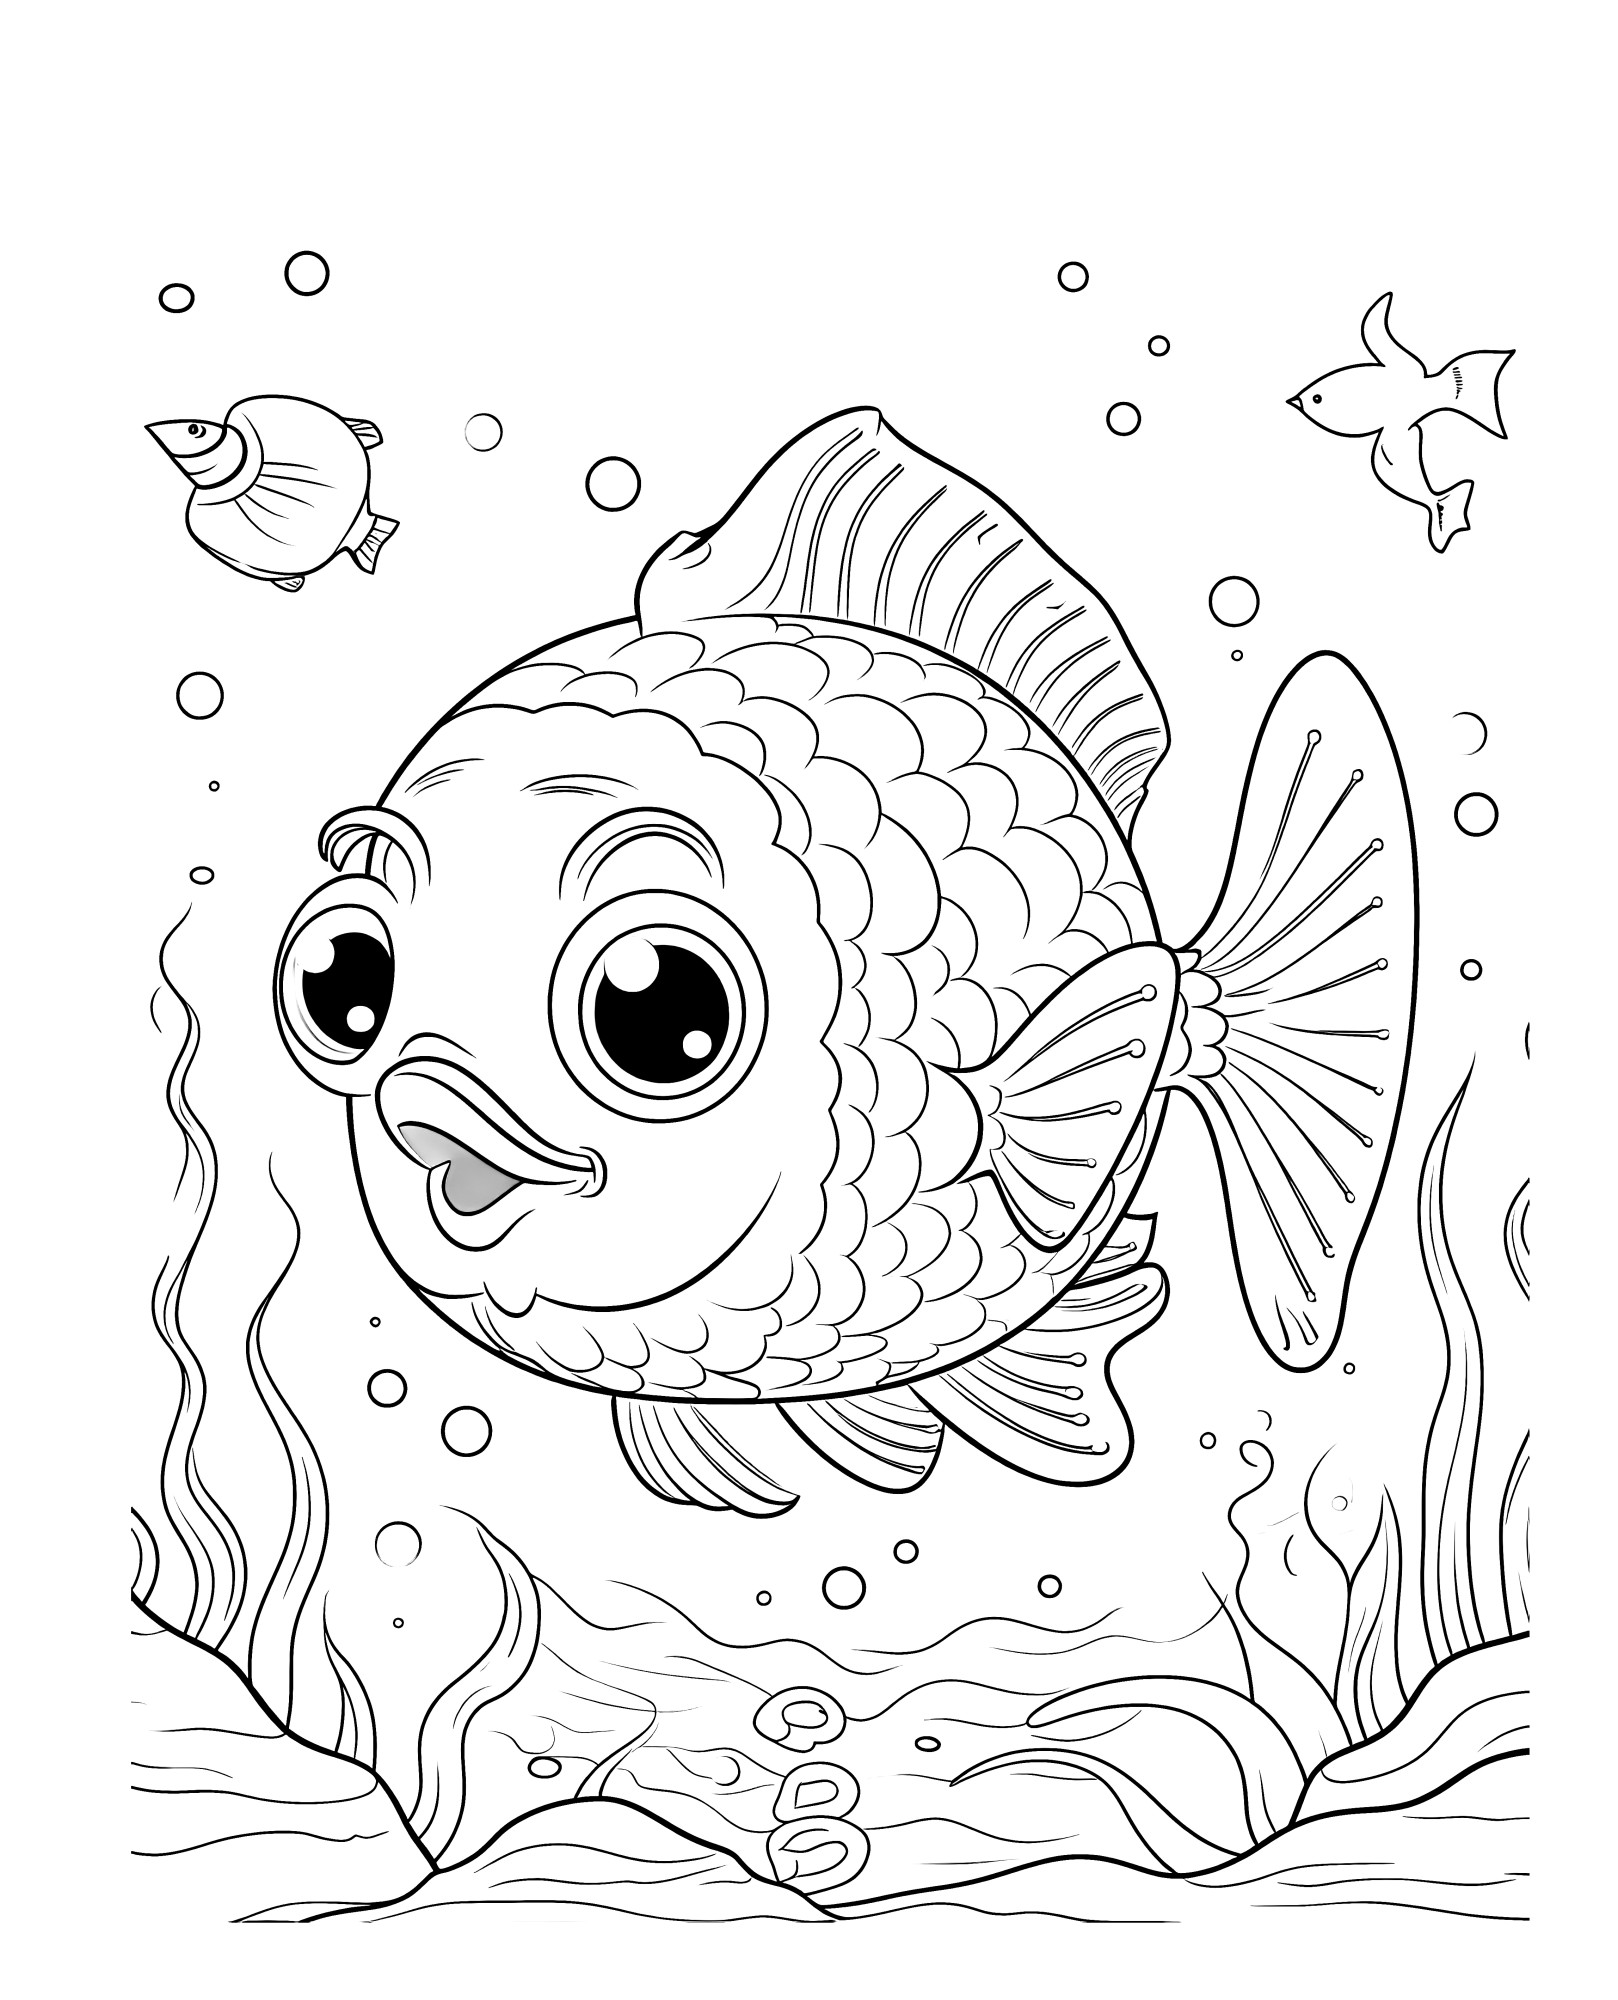 Раскраска для детей: большая рыба с большими глазами и ртом